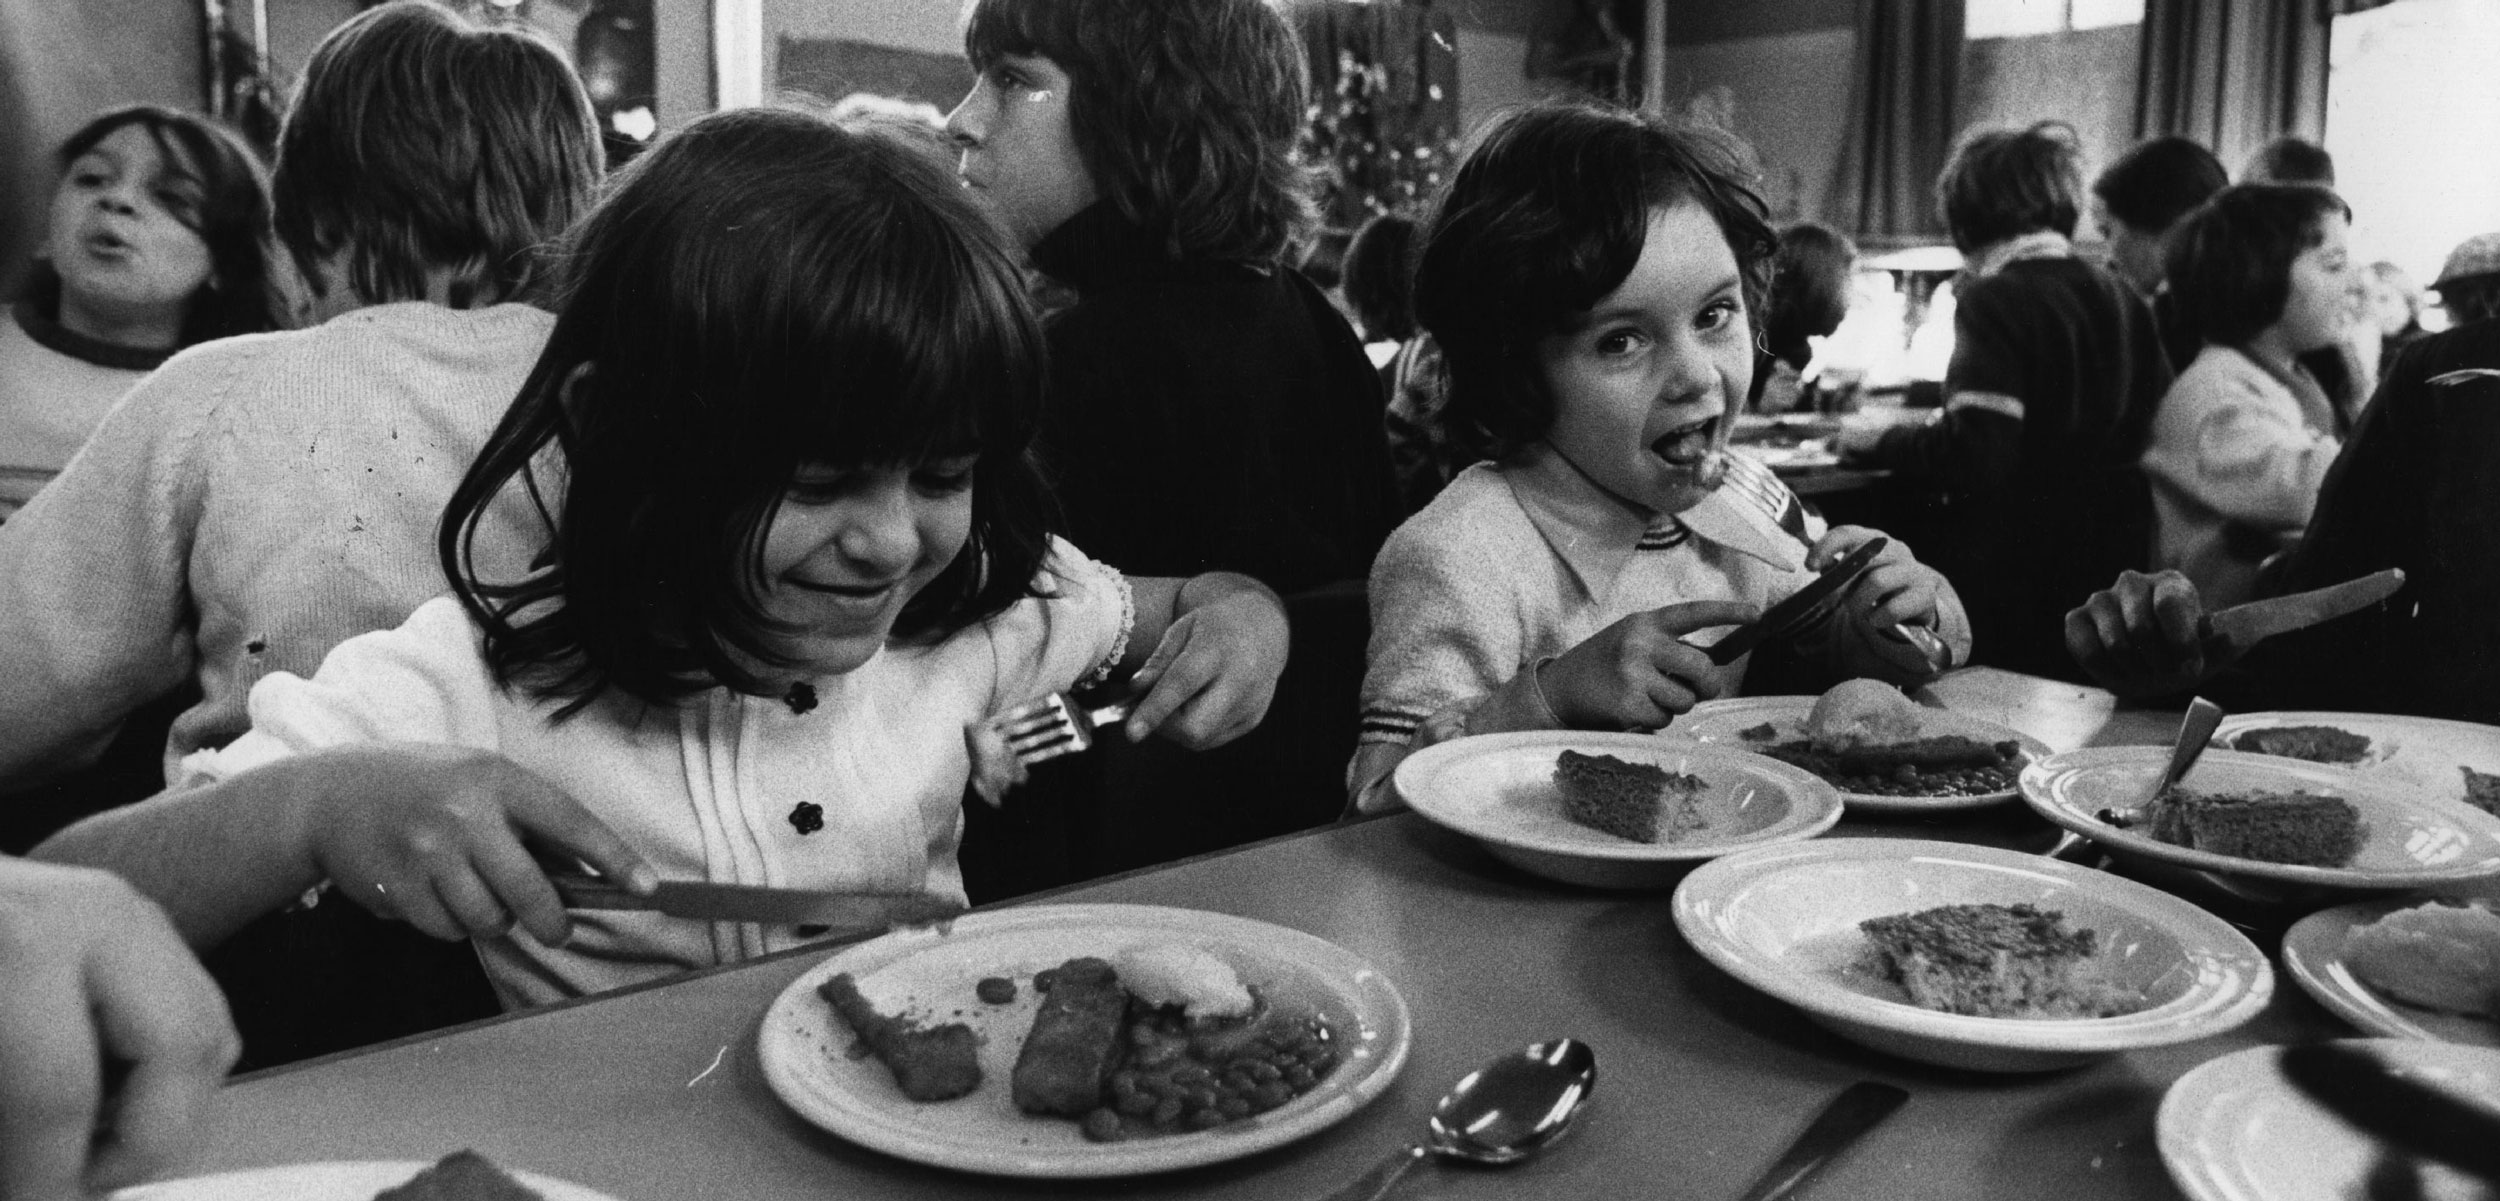 British schoolchildren eating fish sticks in 1974